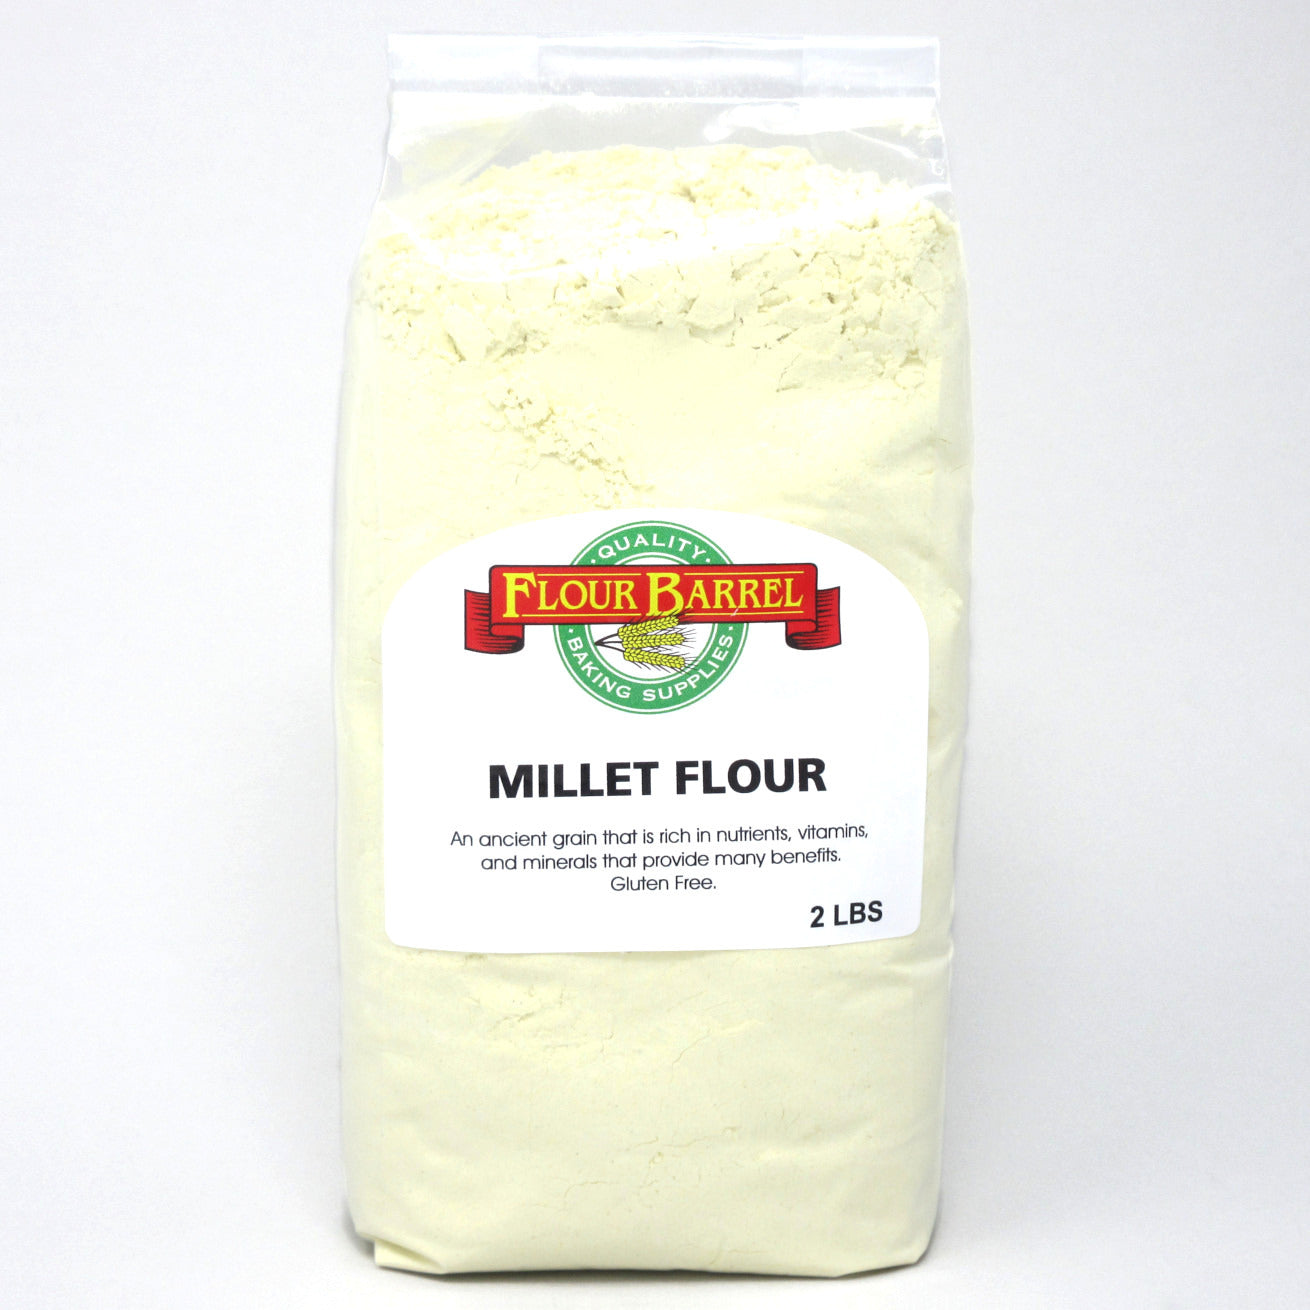 Flour Barrel product image - Millet Flour